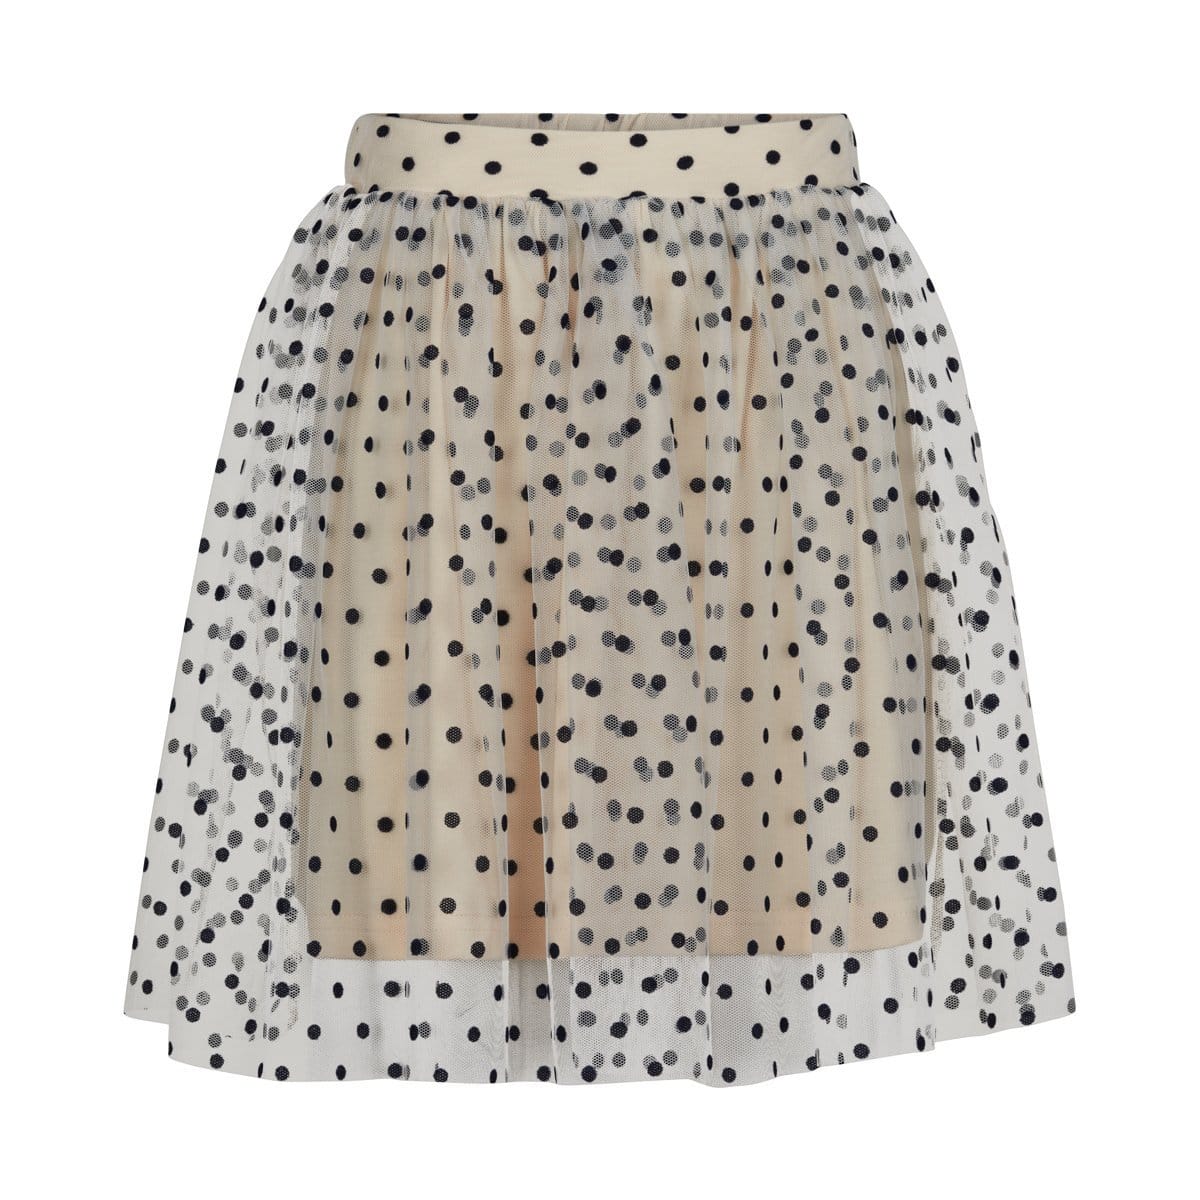 The New Dresses + Skirts Polka dot skirt